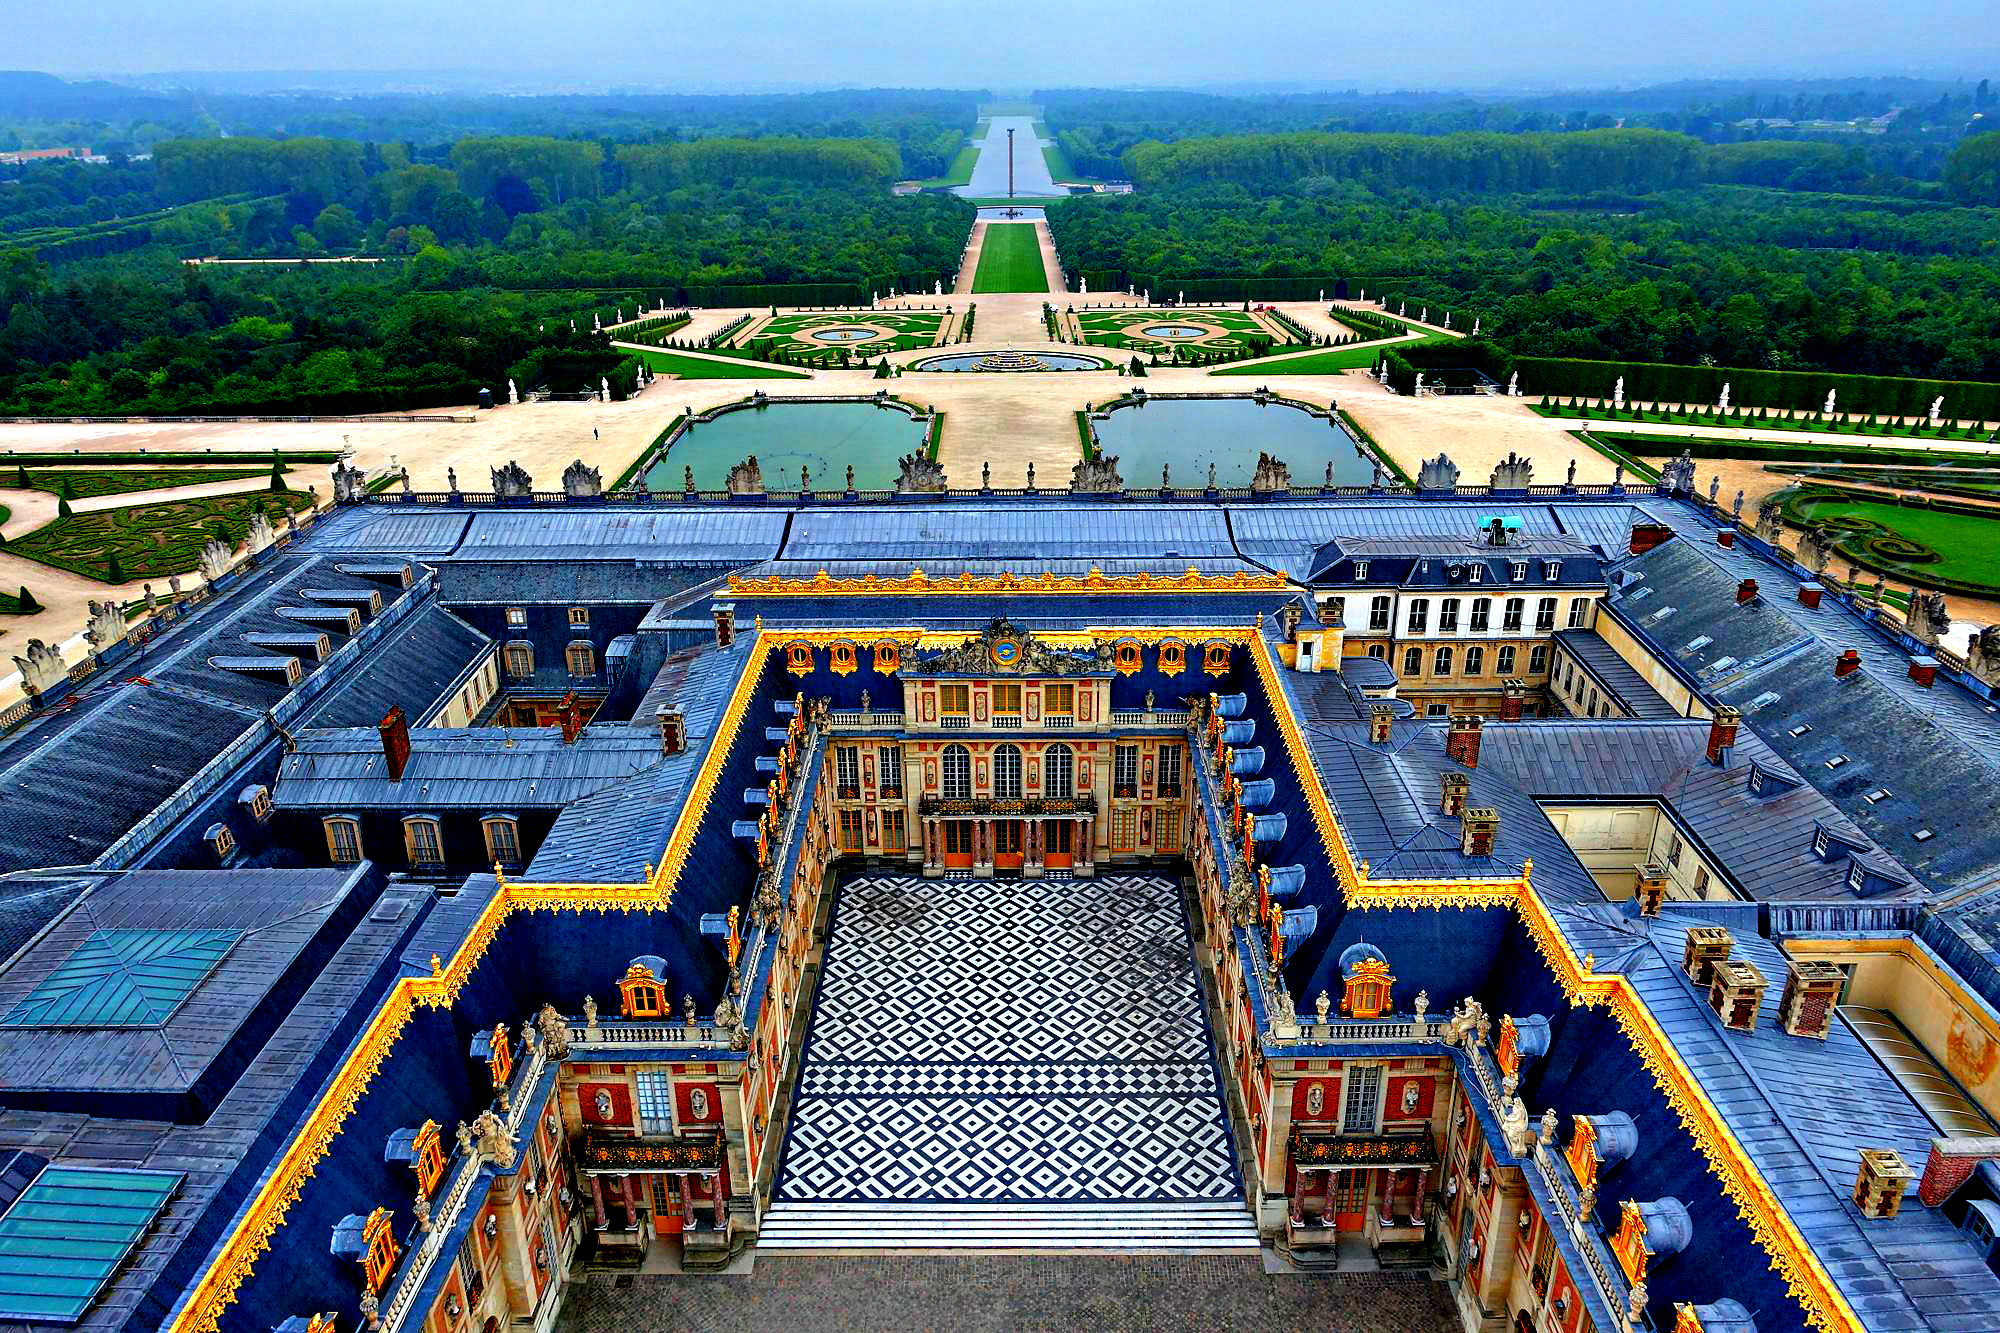 Francia recibe al rey Carlos III en el Palacio de Versalles, que cumple 400 años